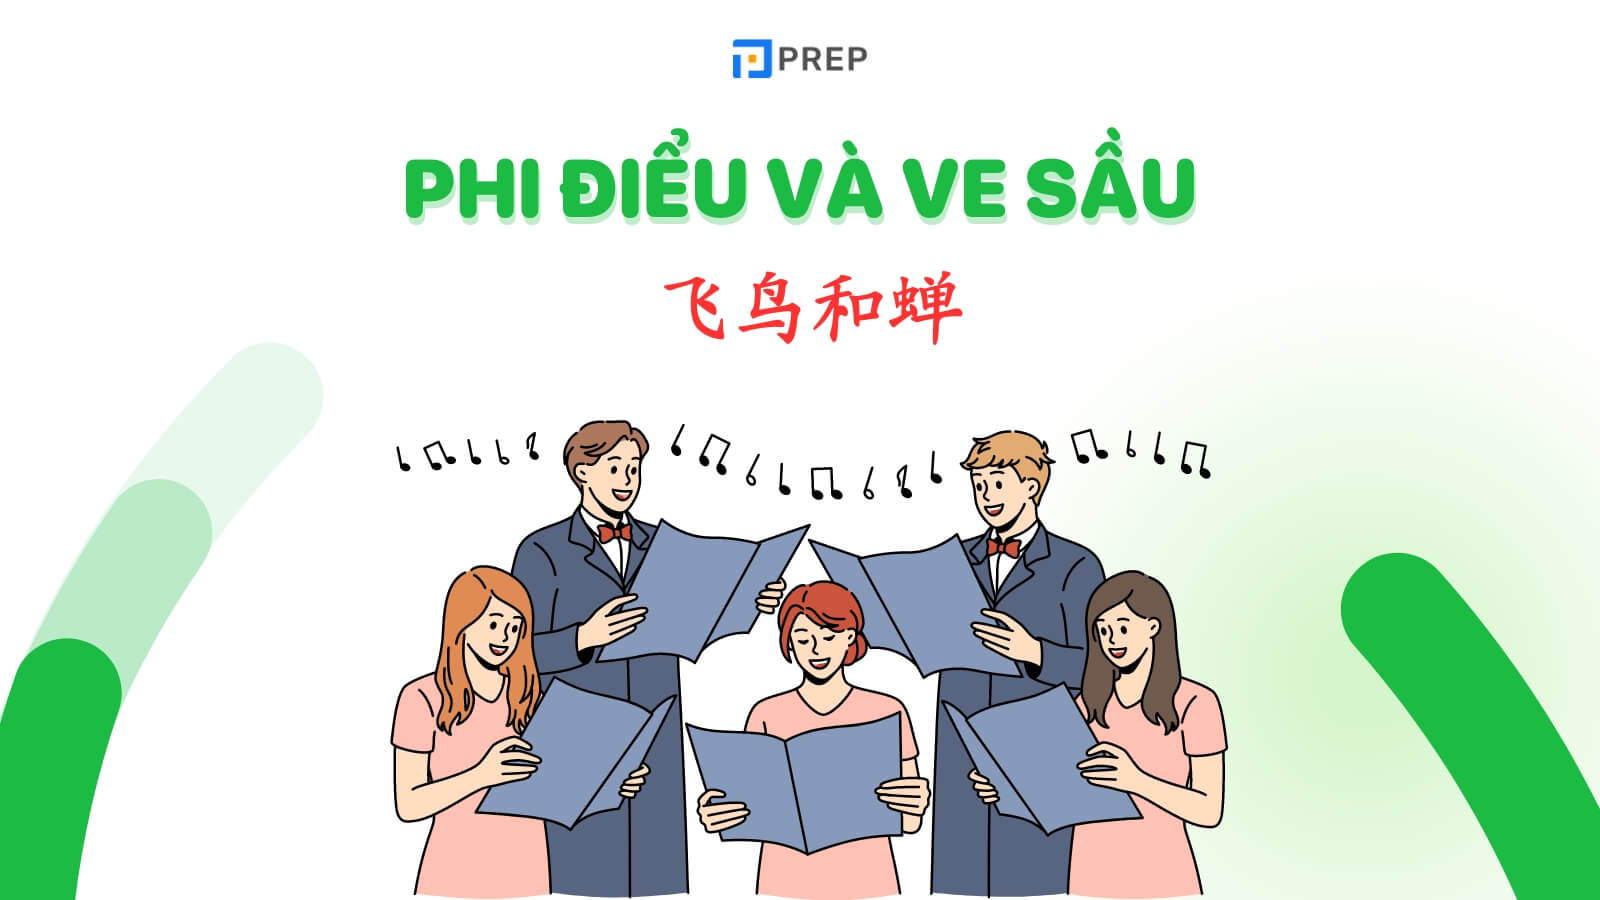 Học tiếng Trung qua bài hát Phi điểu và ve sầu